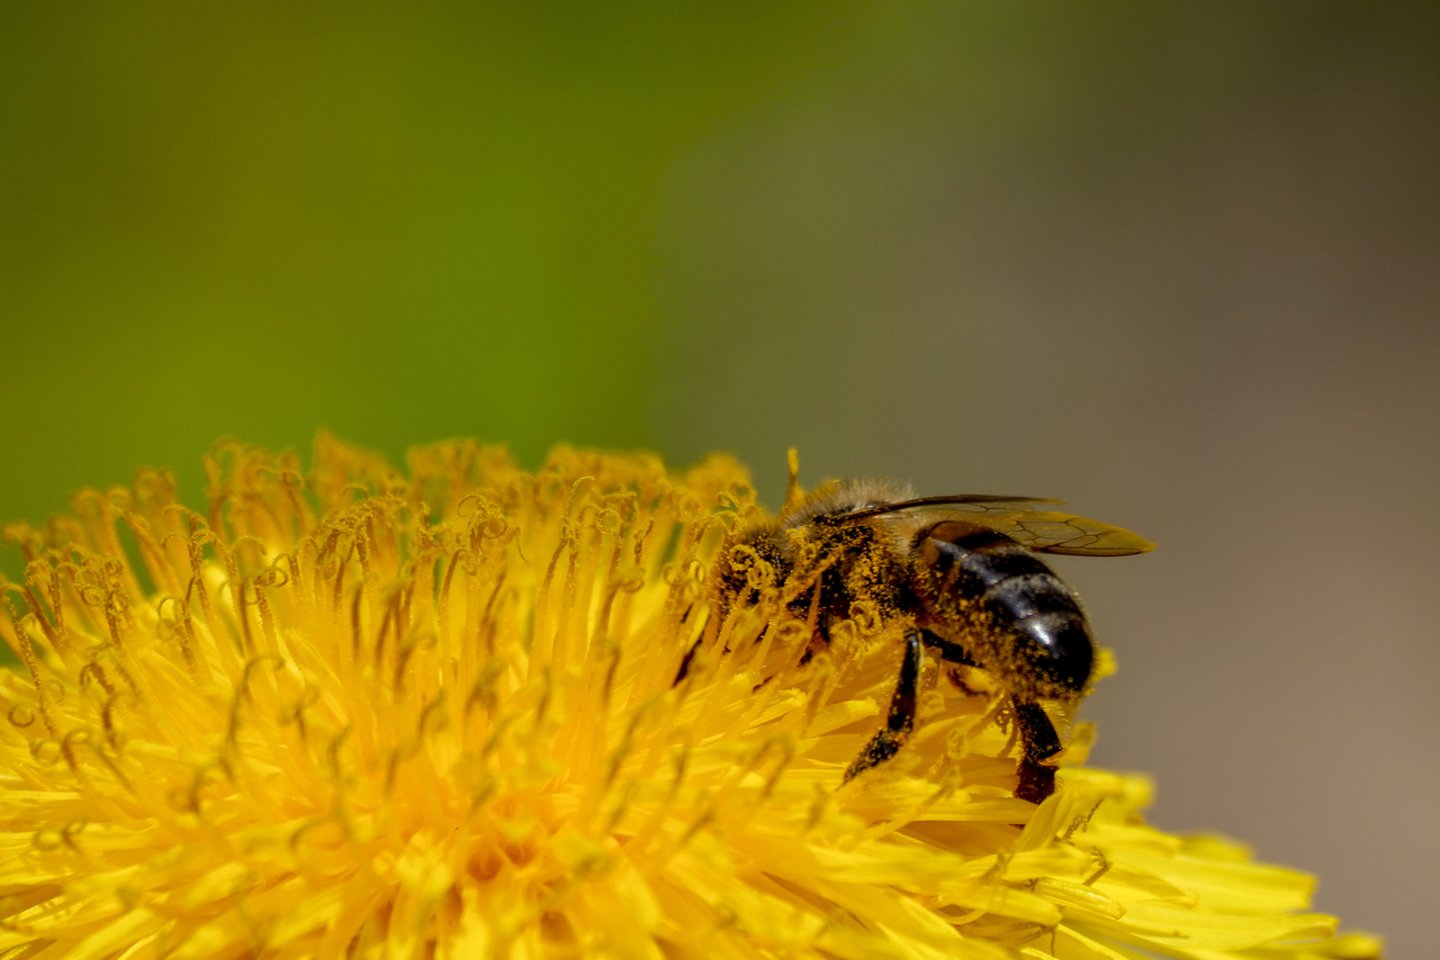 Įgėlus bitėms, širšėms, vapsvoms įprastinė audinių reakcija įgėlimo vietoje: aštrus skausmas, patinimas, šie simptomai dažniausiai išnyksta per kelias valandas.<br>V.Ščiavinsko nuotr.